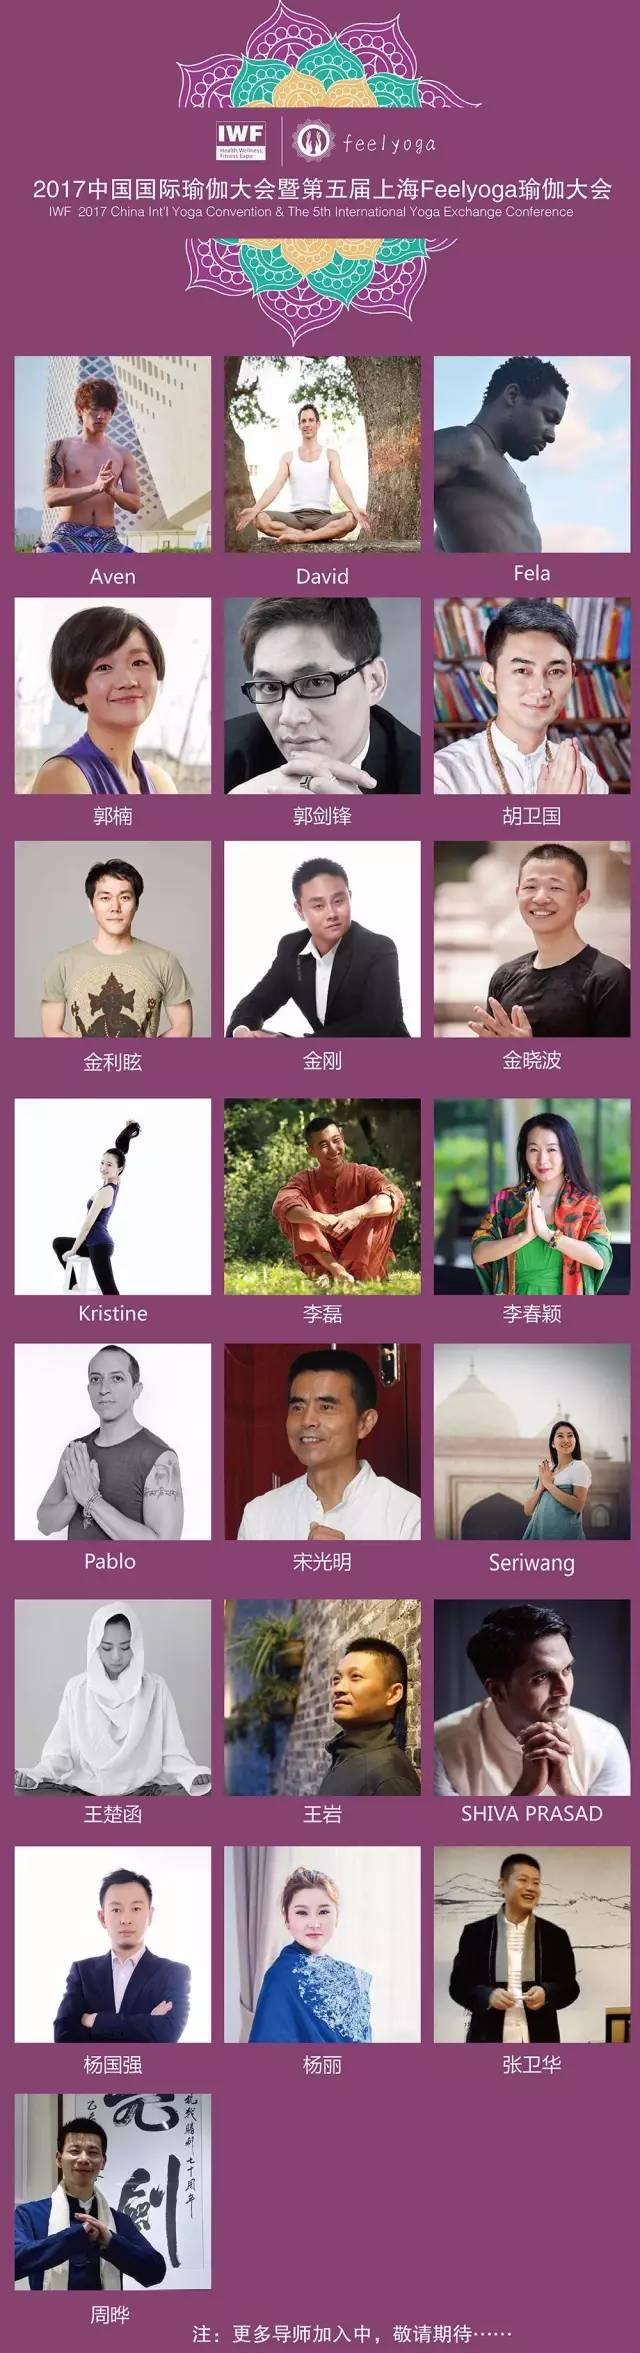 IWF 2017中国国际瑜伽大会暨第五届上海Feelyoga瑜伽大会